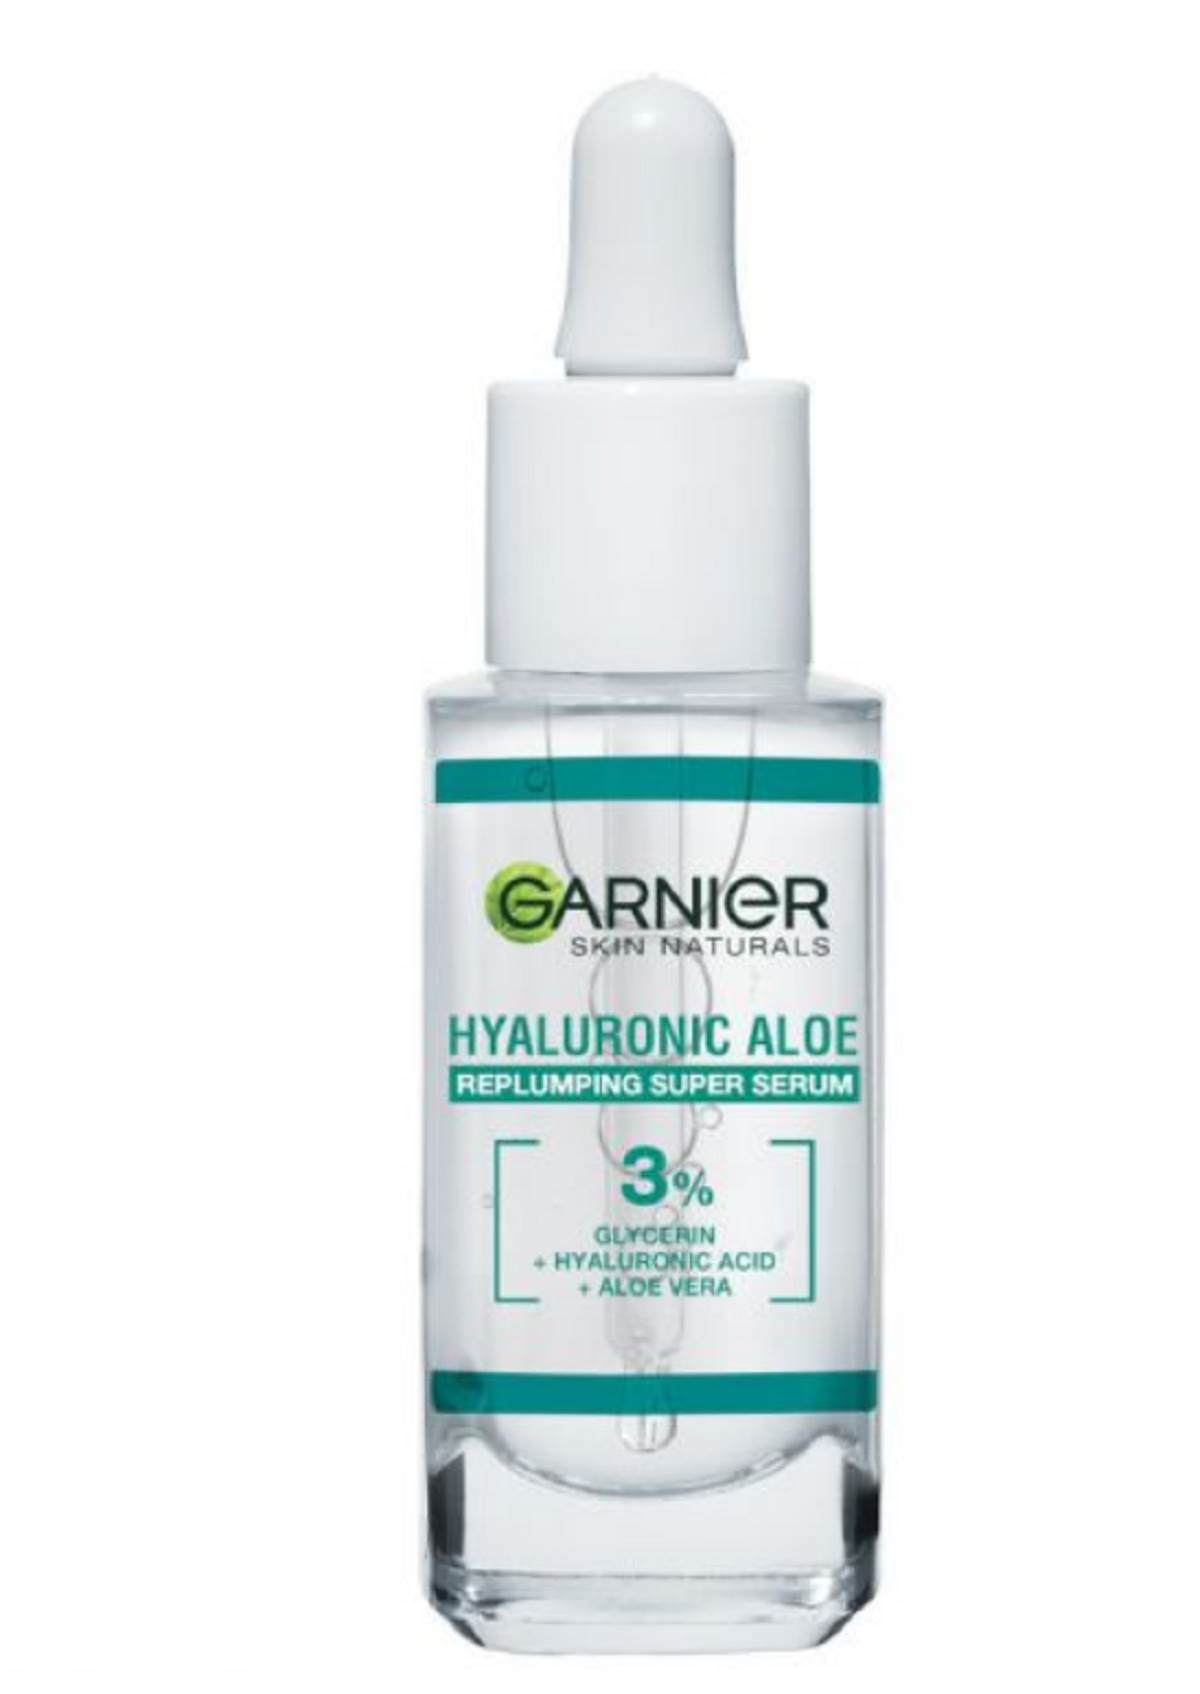  Garnier u svojoj ponudi ima sjajan proizvod, a reč je o Skin Naturals Hyaluronic Aloe serumu. 